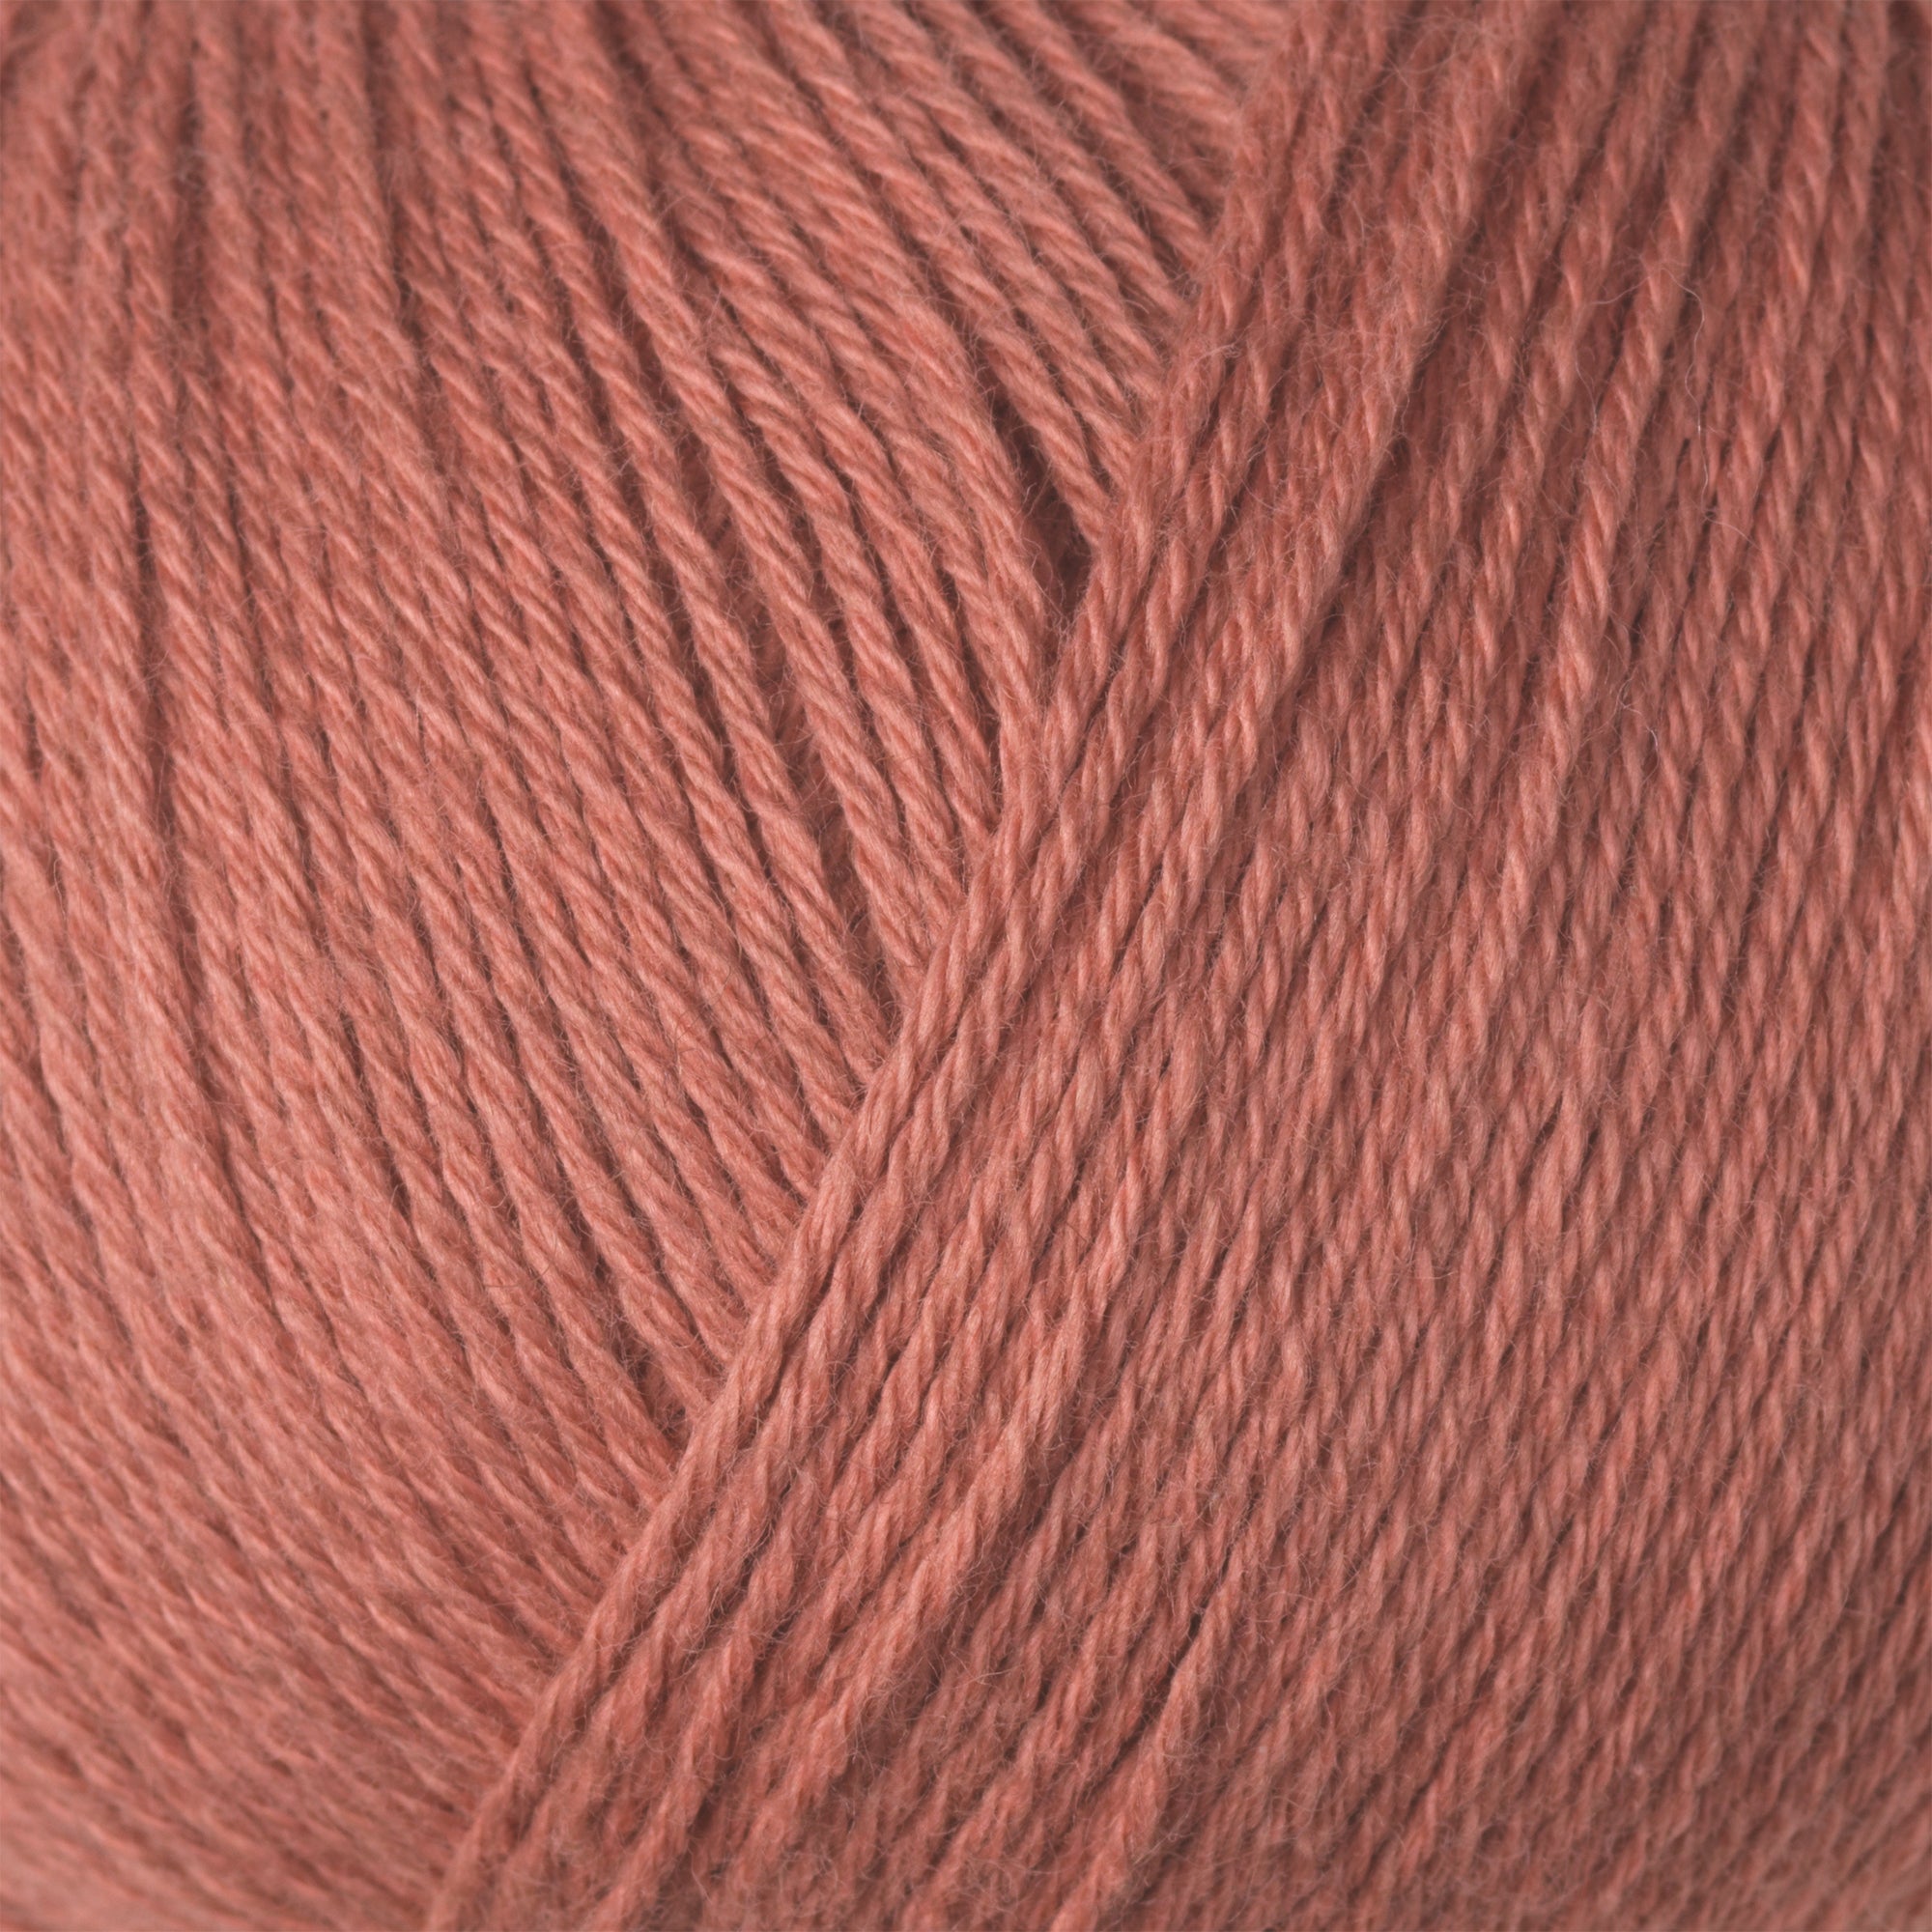 Knitting for Olive Cotton Merino - Terracotta Rose